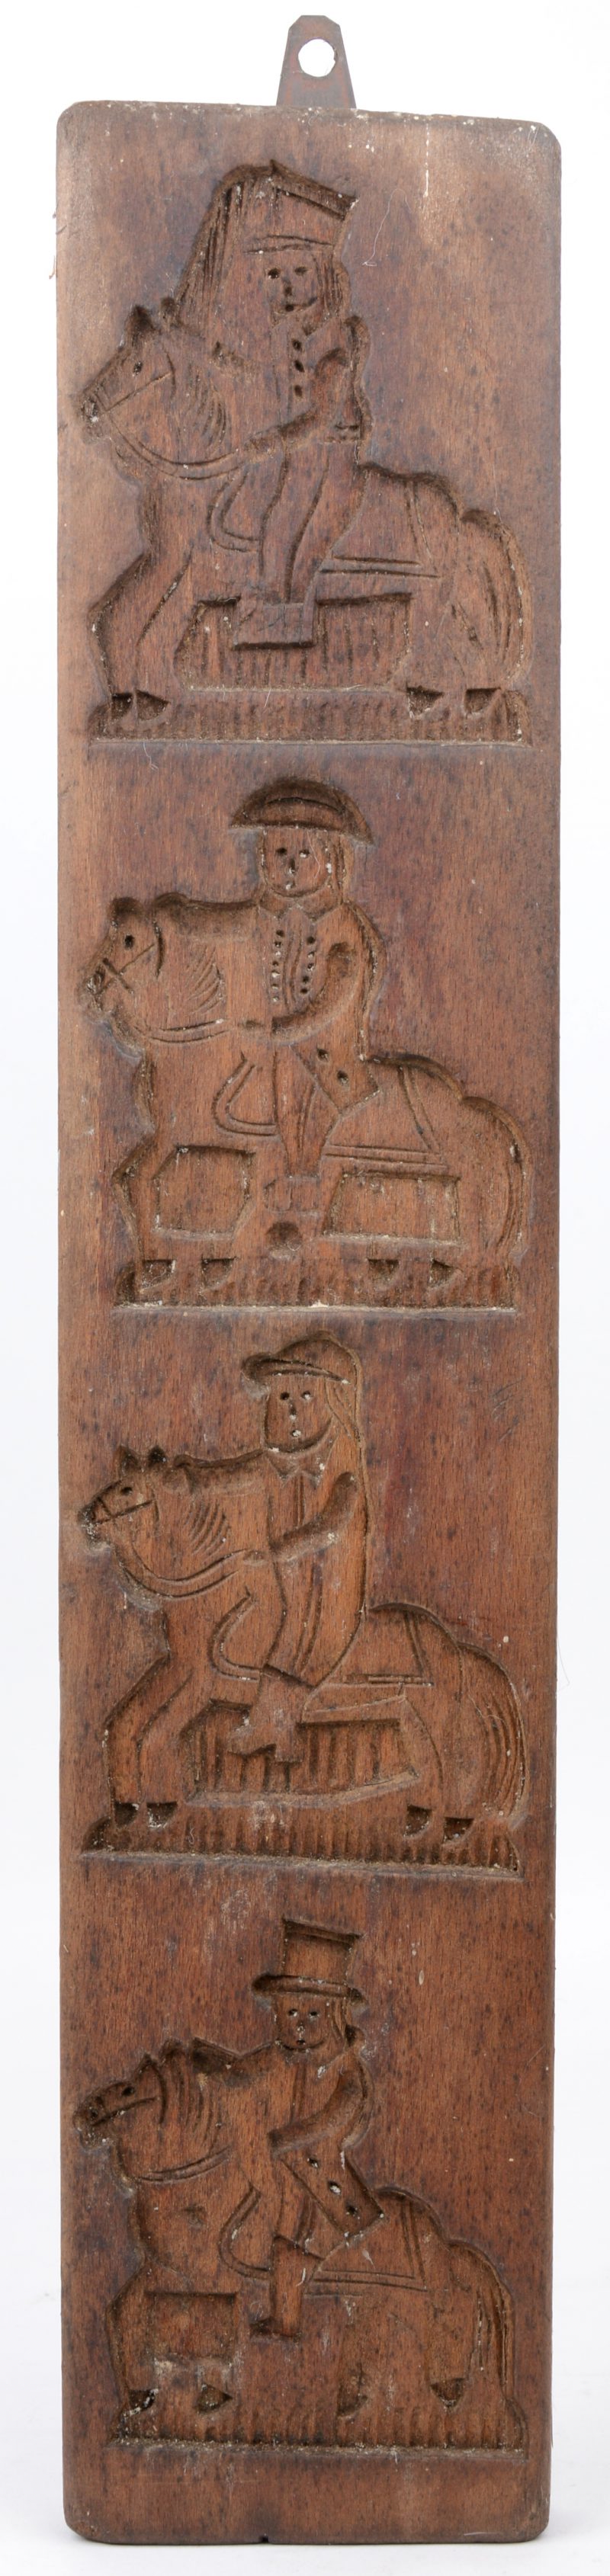 Een houten speculaasvorm met vier figuren.